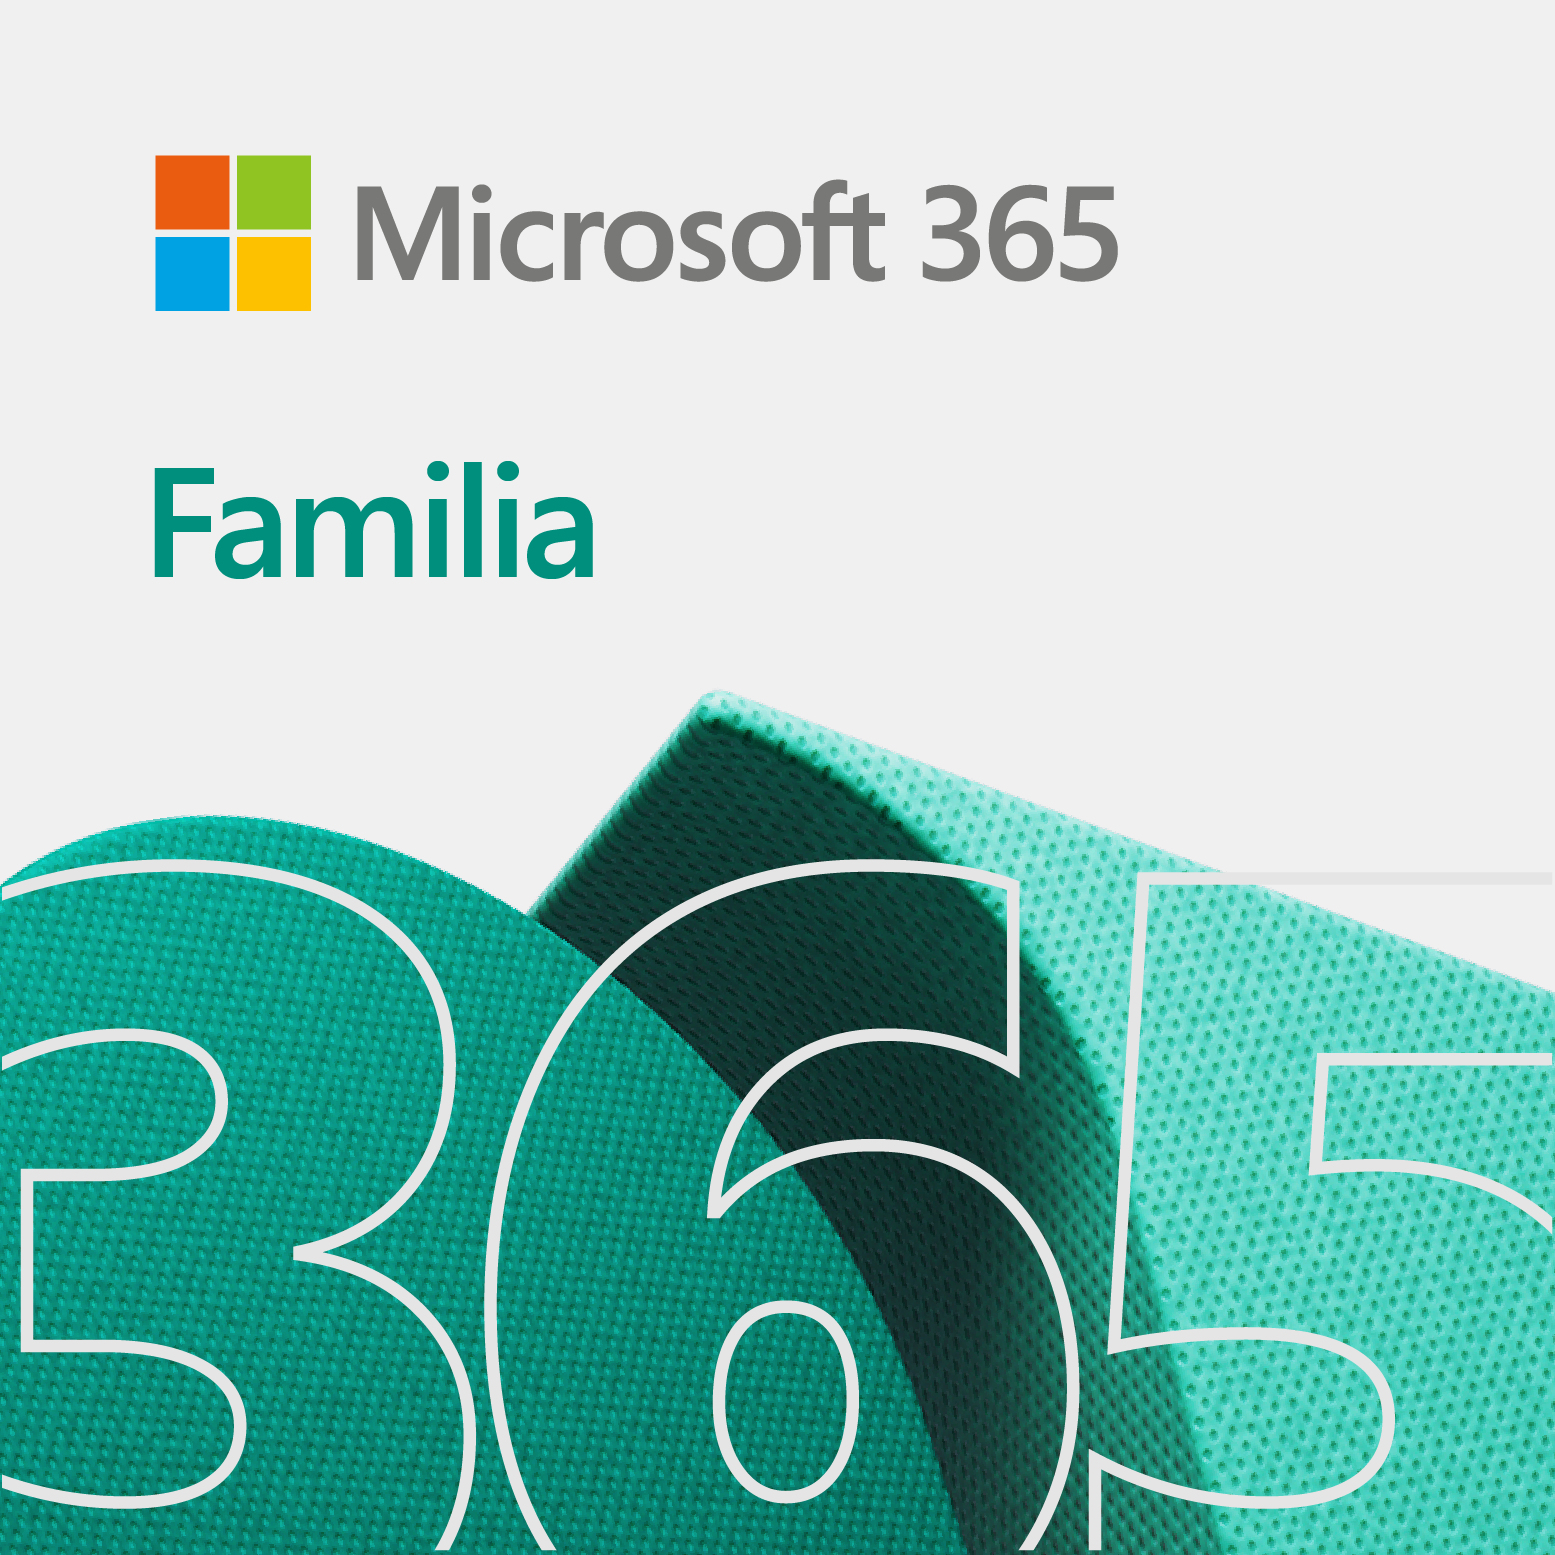 Microsoft Office 365 Home Premium 6 licencia(s) 1 año(s) Plurilingüe, 10986  en el stock de distribuidores/mayoristas para que lo vendan  comercializadores - Stock In The Channel